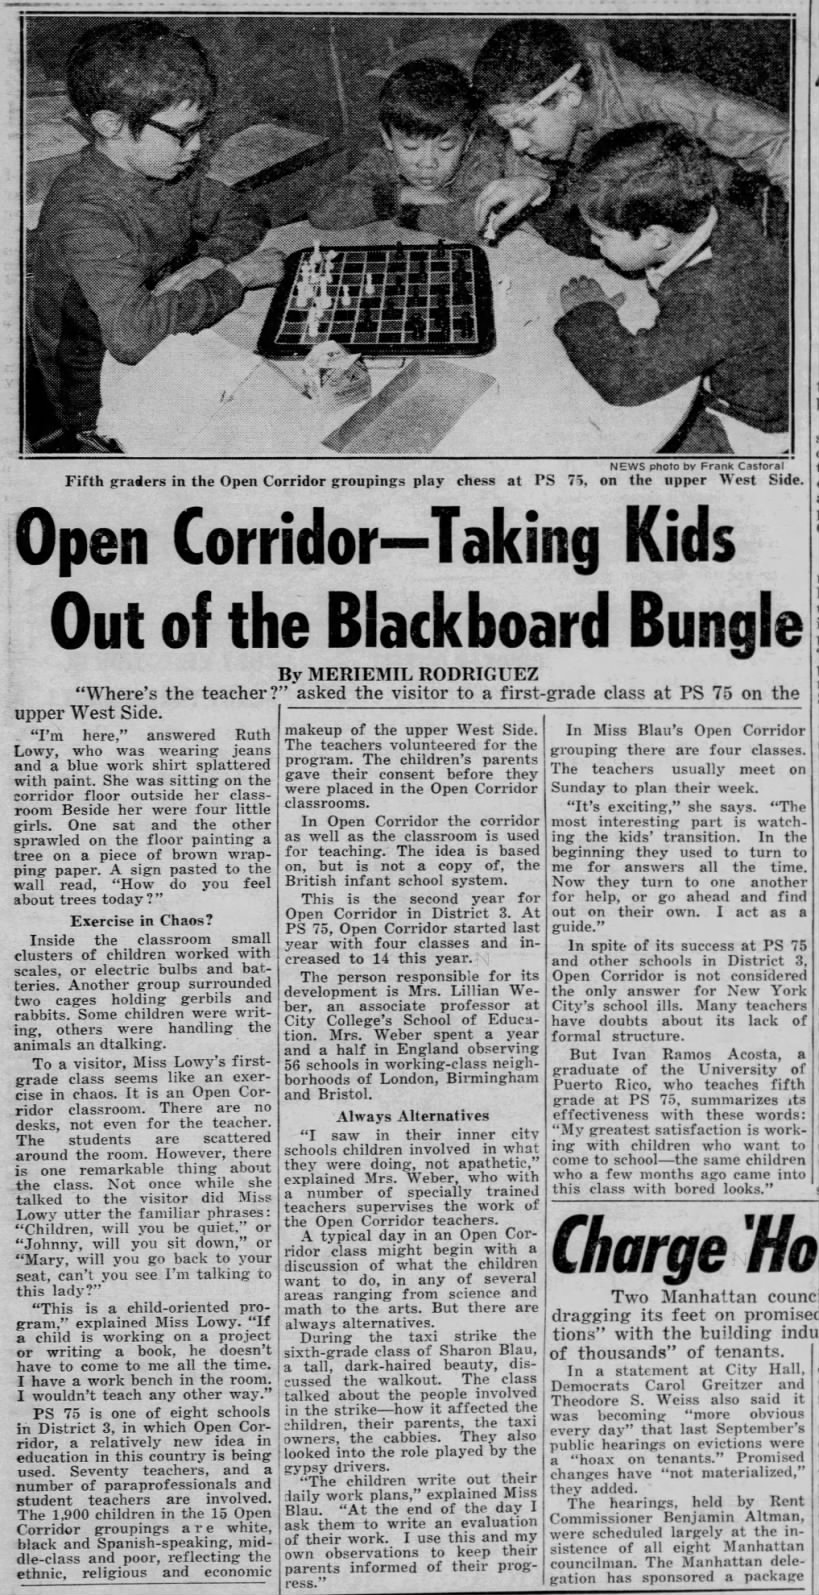 Open Corridor - Taking Kids Out of the Blackboard Bungle